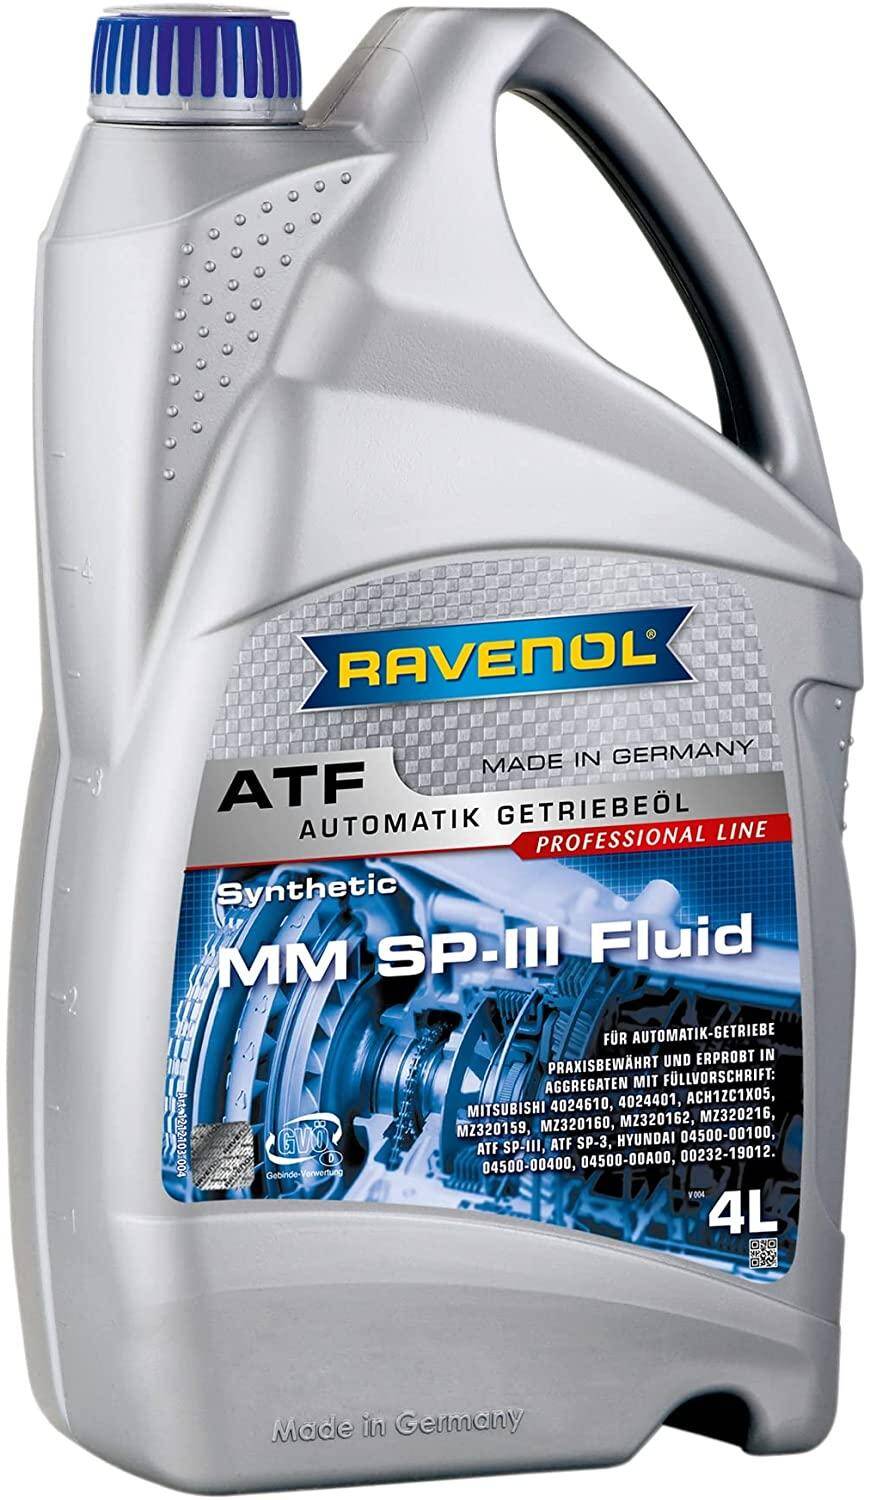 Ravenol ATF MM SP-III Fluid 4L